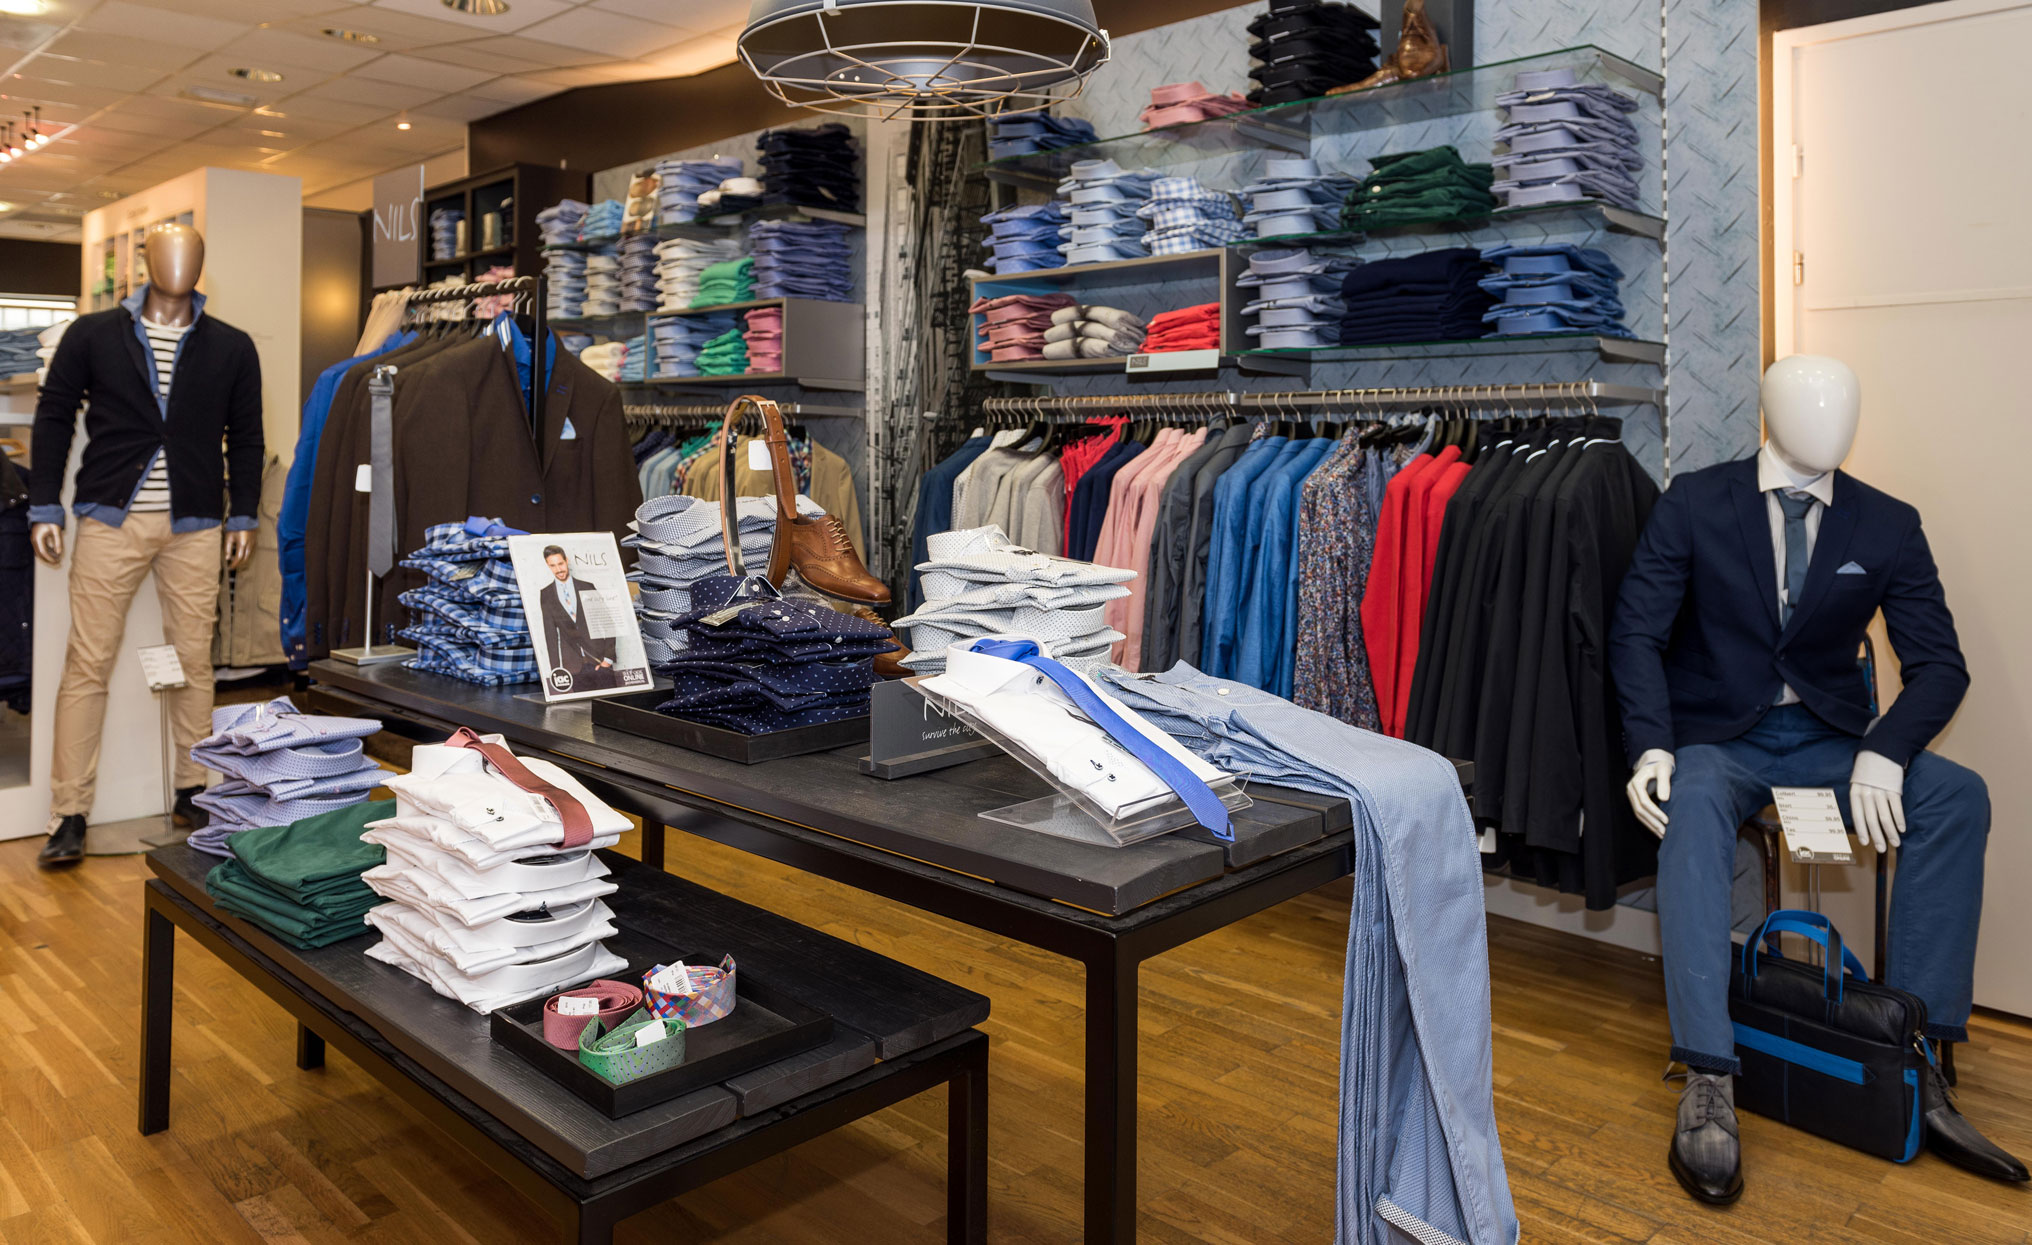 Jac Hensen en meer winkels in Deventer vind je bij Shoppen in Deventer